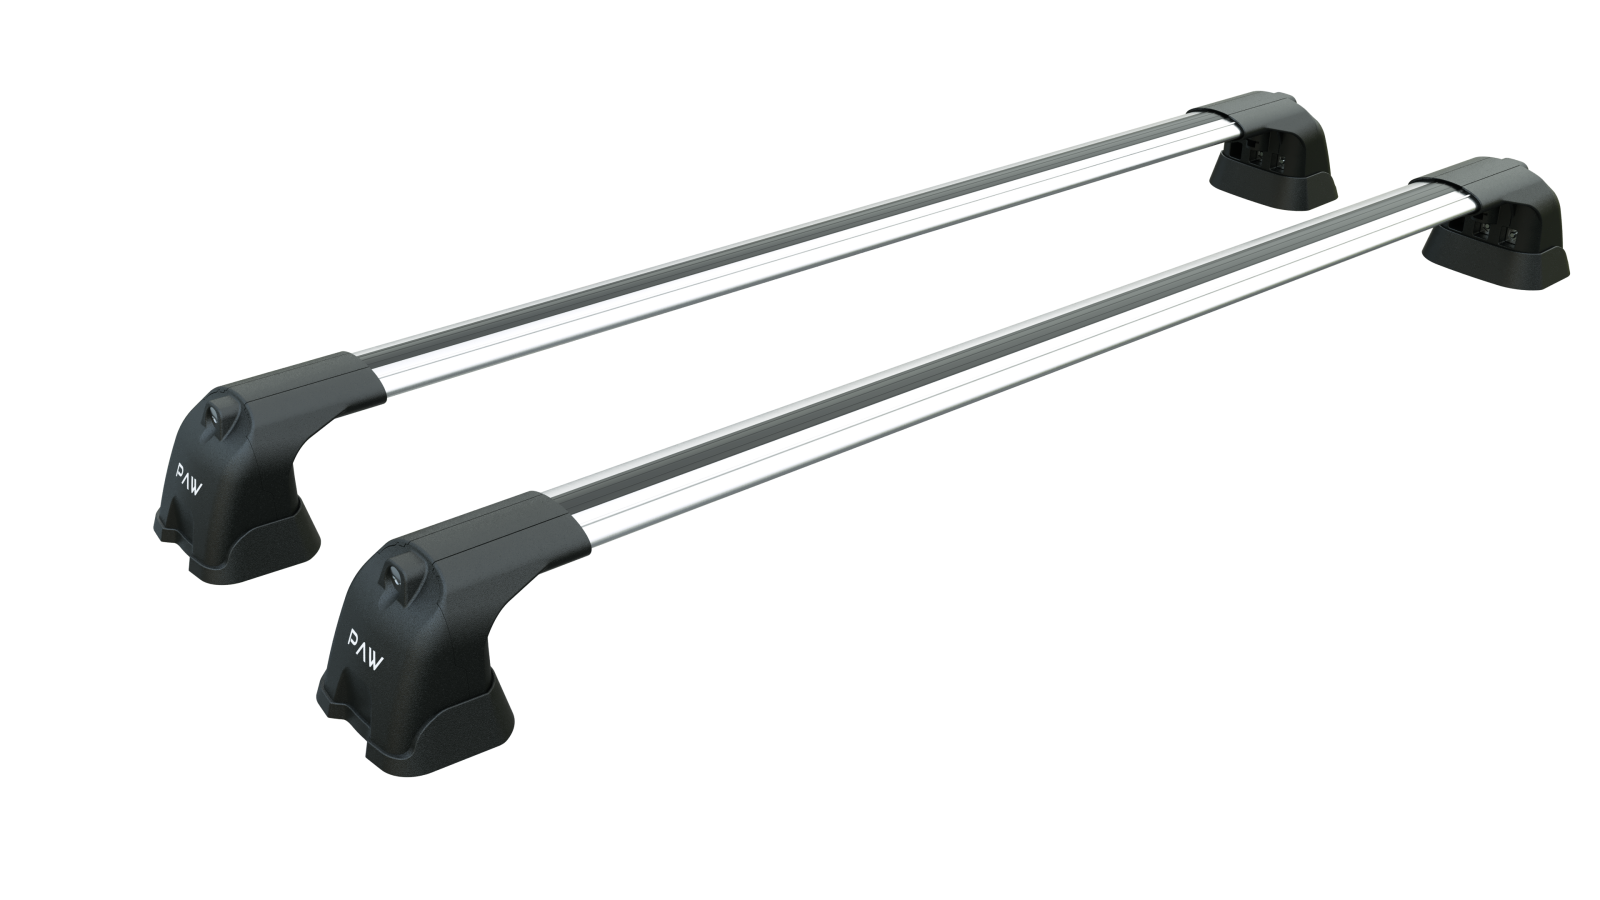 For Tesla Model S 2016-2021 Roof Rack Cross Bars Metal Bracket Fix Point Alu Silver